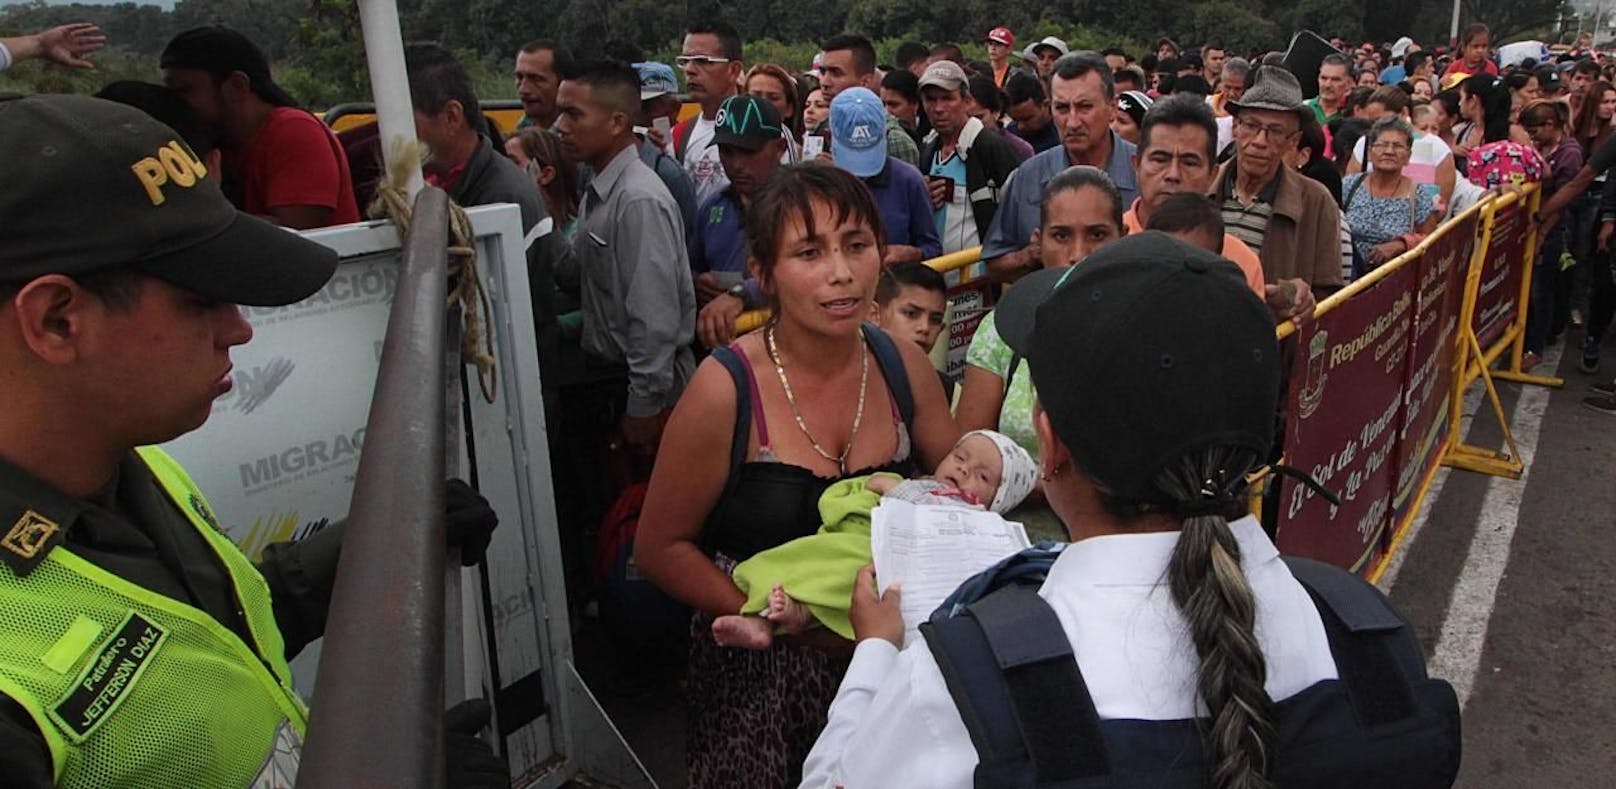 "Hungrige Venezolaner fallen an der Grenze um"